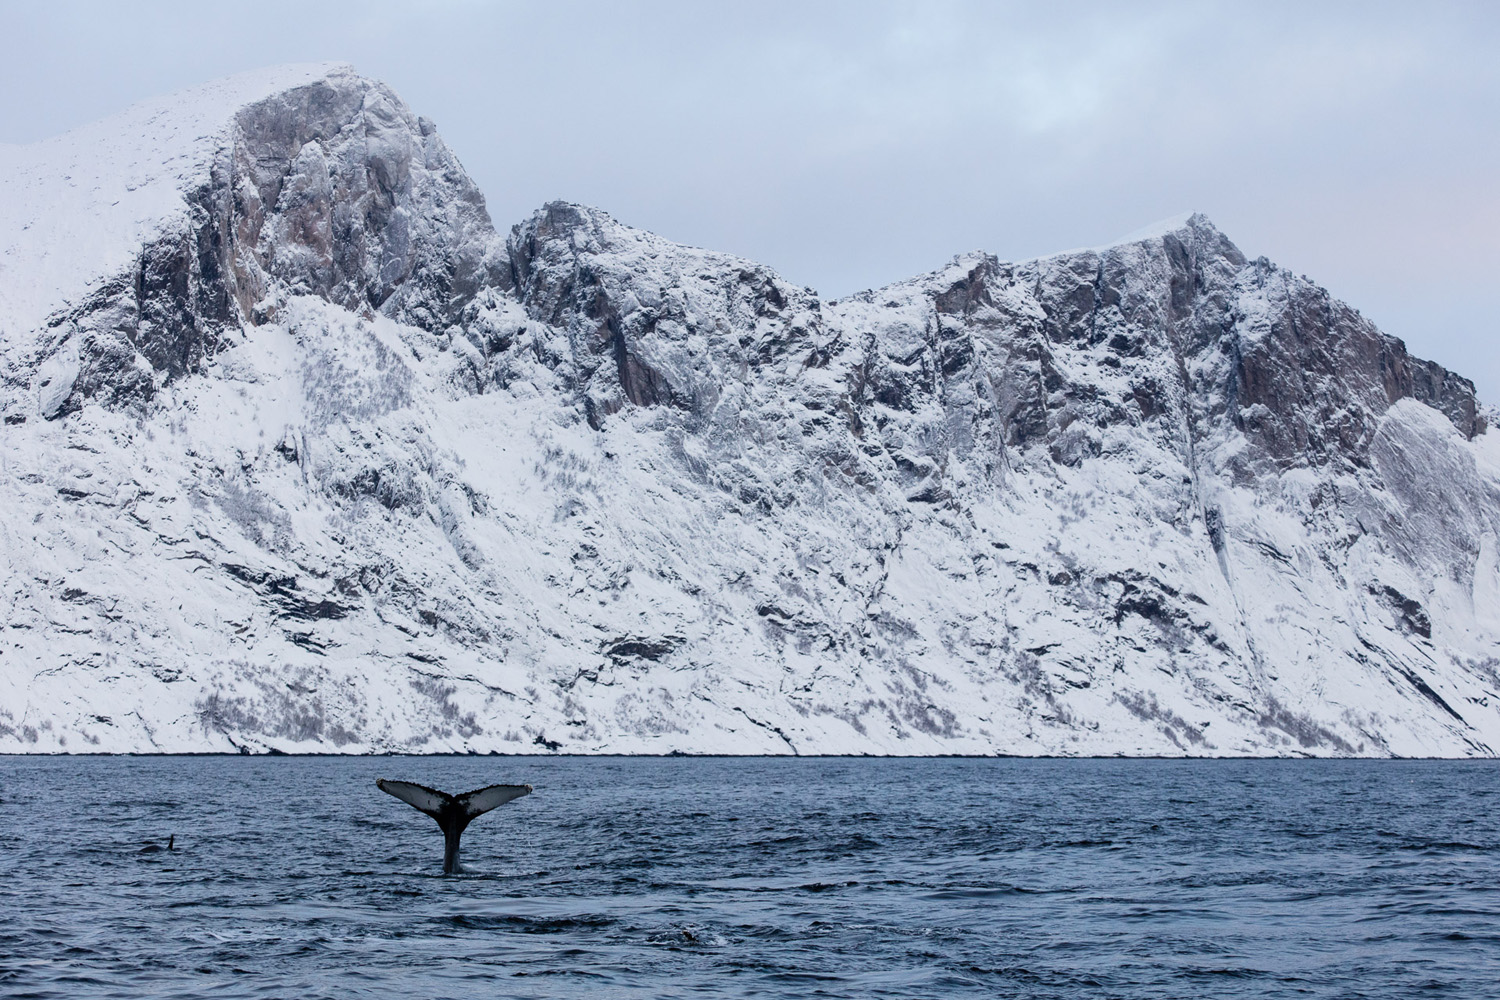 queue de baleine à bosse dans le fjord de Mefjordvær, sur l'île de Senja, près de Tromsø, en Norvège